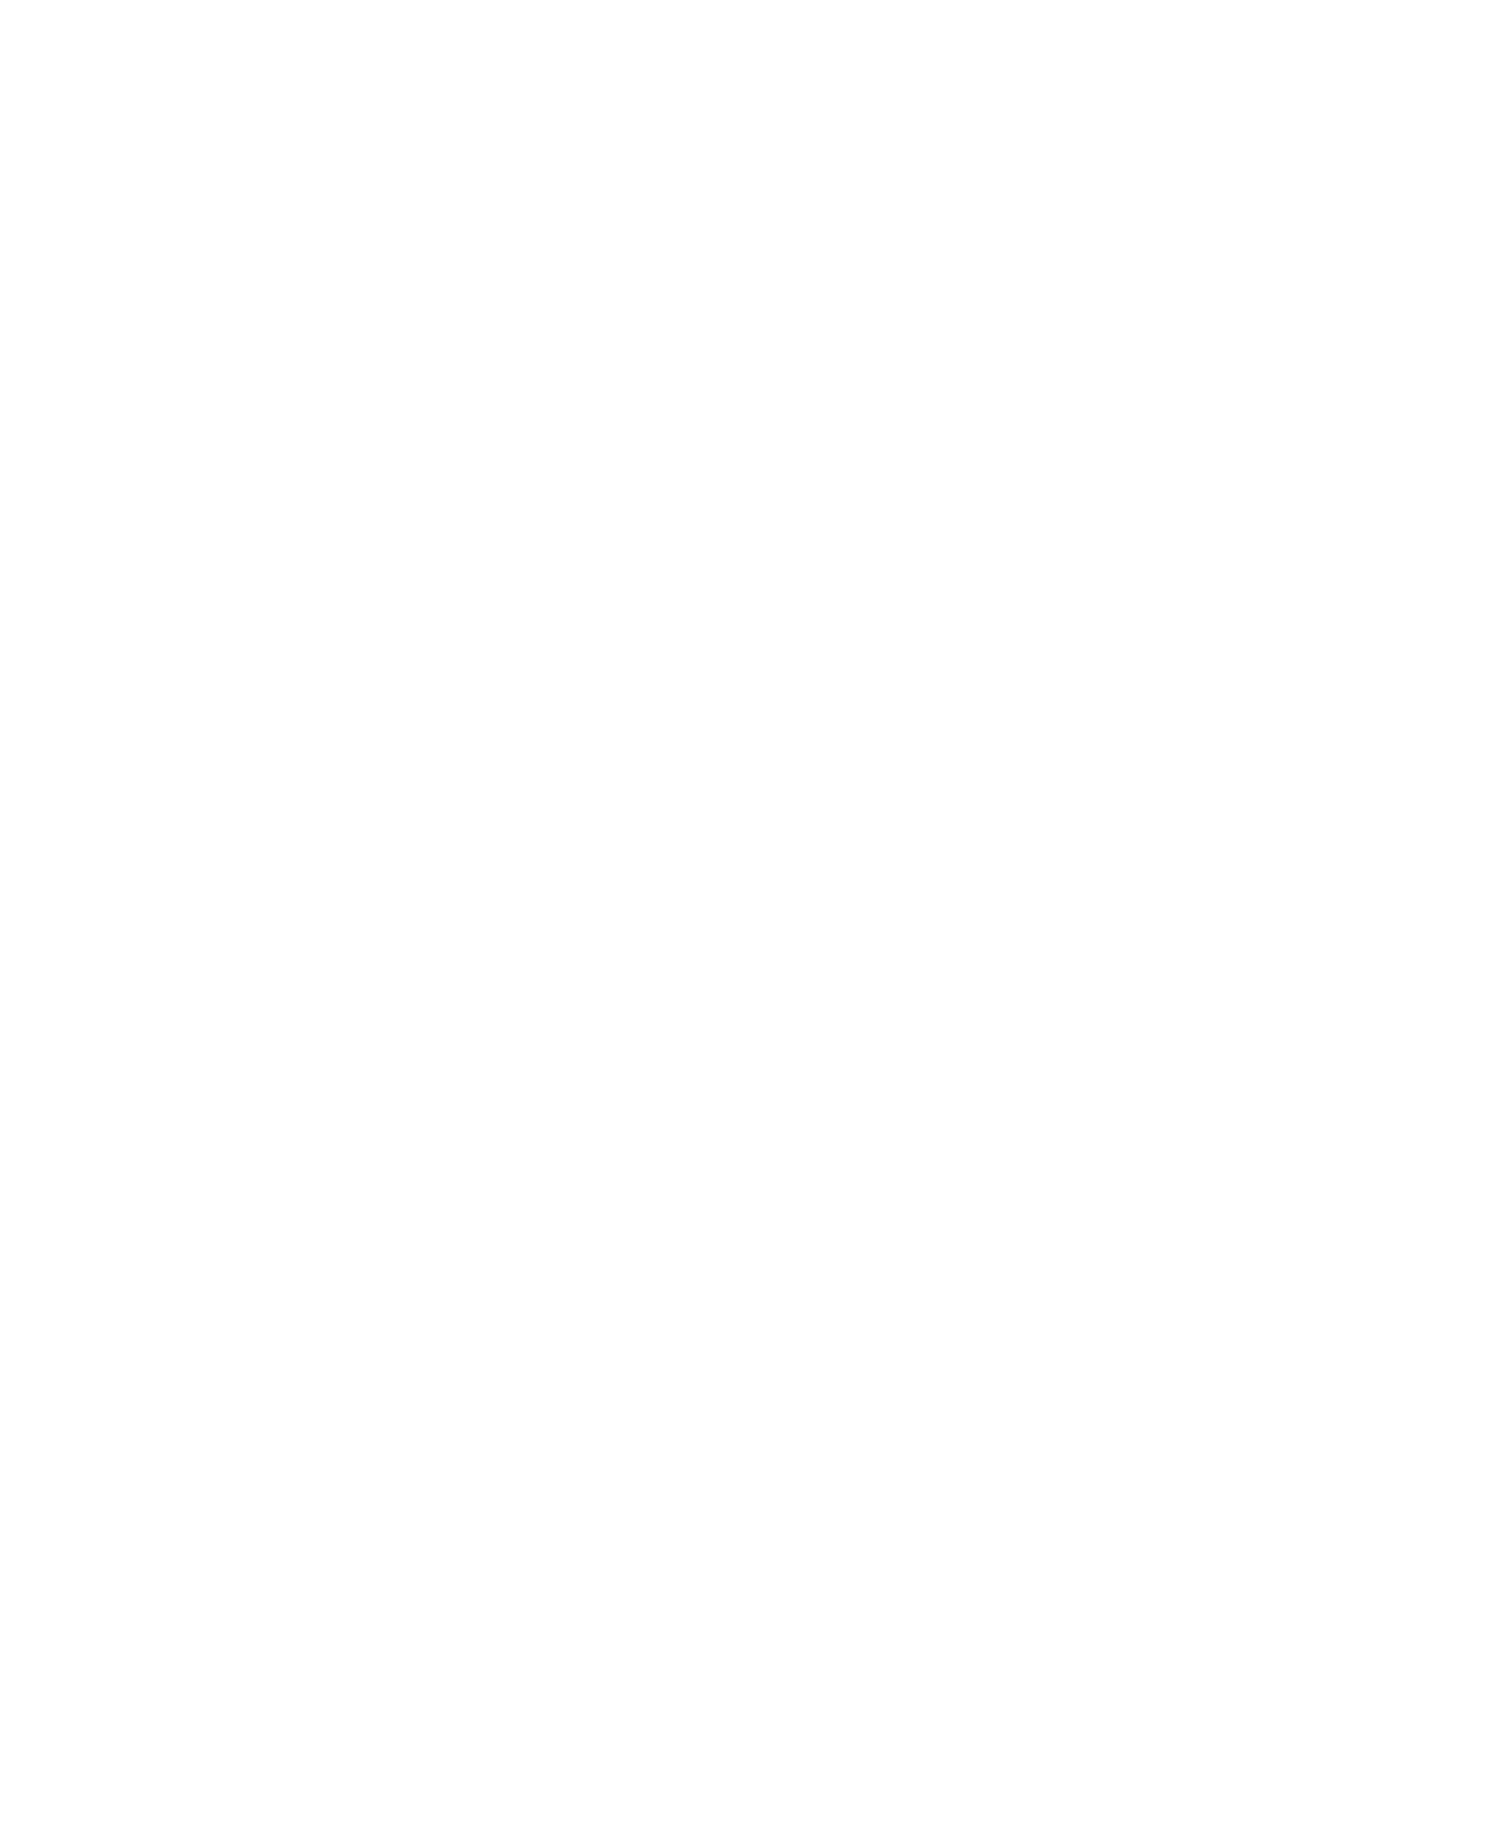 NYC BJJ Academy